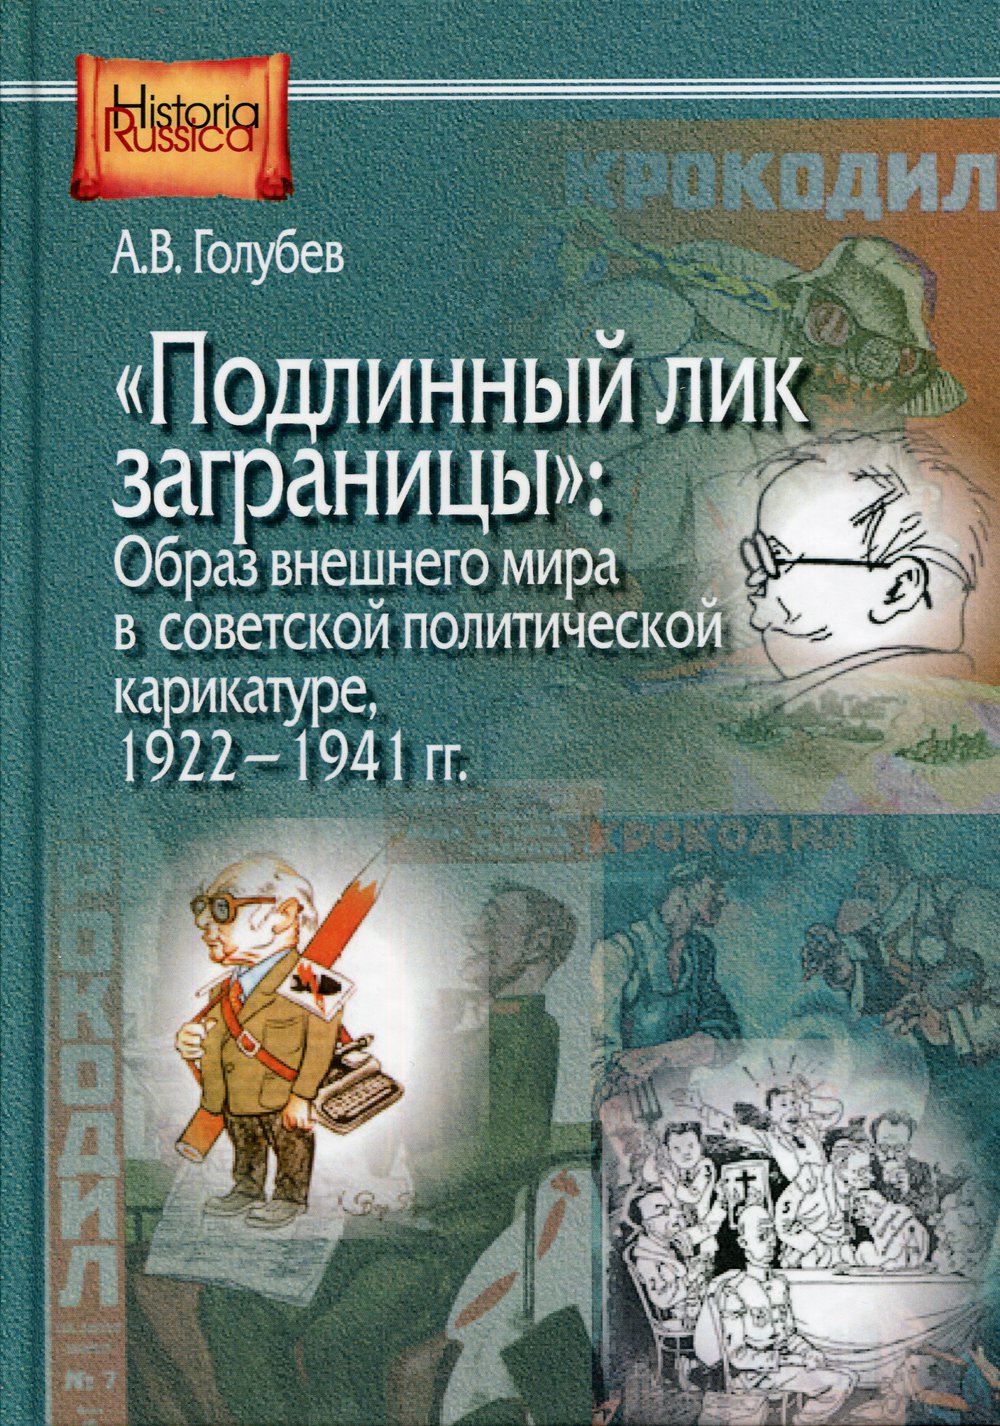 &quot;Подлинный лик заграницы&quot;: образ внешнего мира в советской политической карикатуре. 1922-1941 гг.